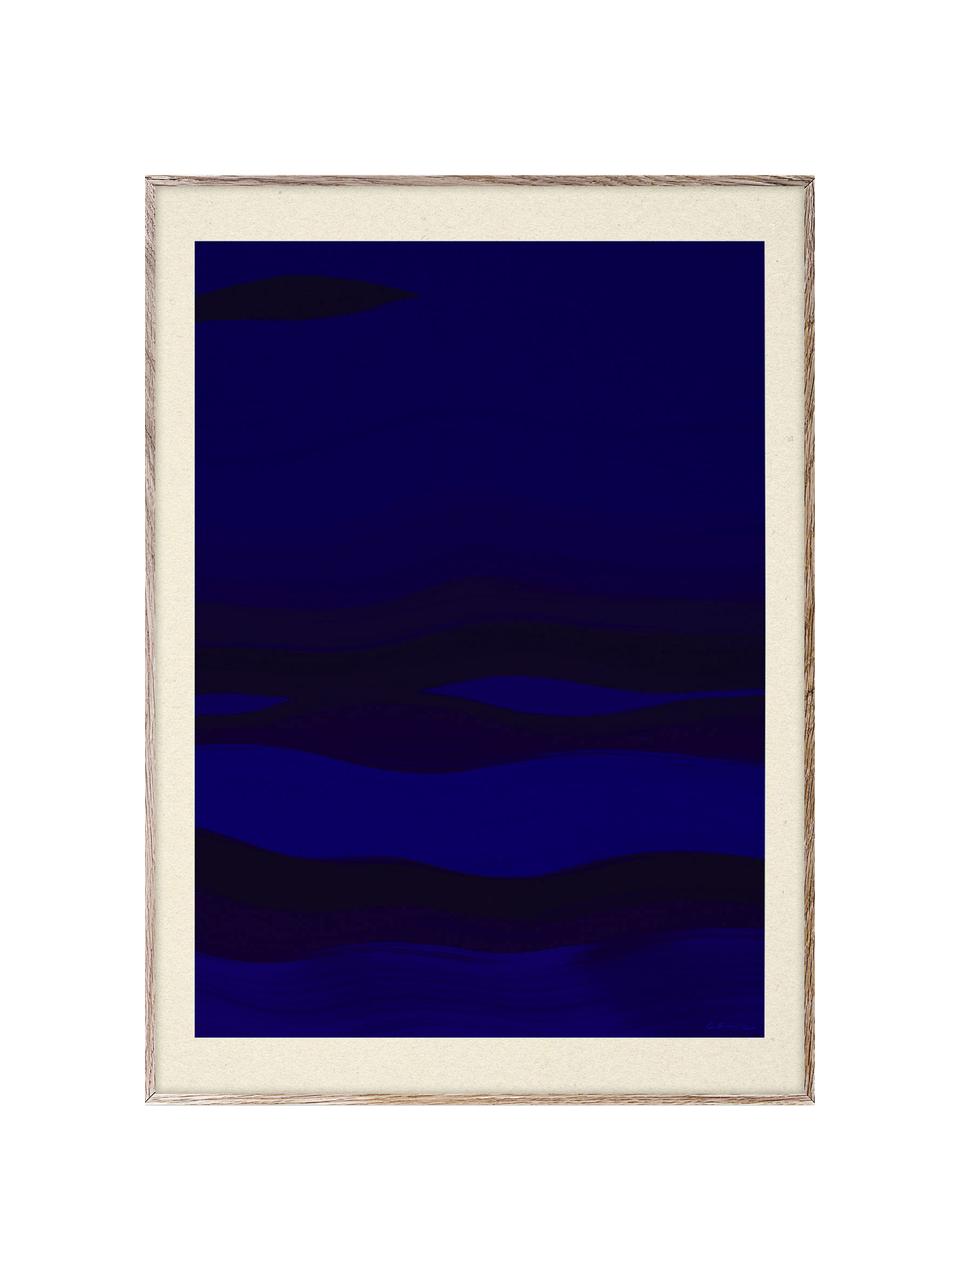 Plakát From Afar, 210g matný papír Hahnemühle, digitální tisk s 10 barvami odolnými vůči UV záření, Tmavě modrá, černá, Š 30 cm, V 40 cm